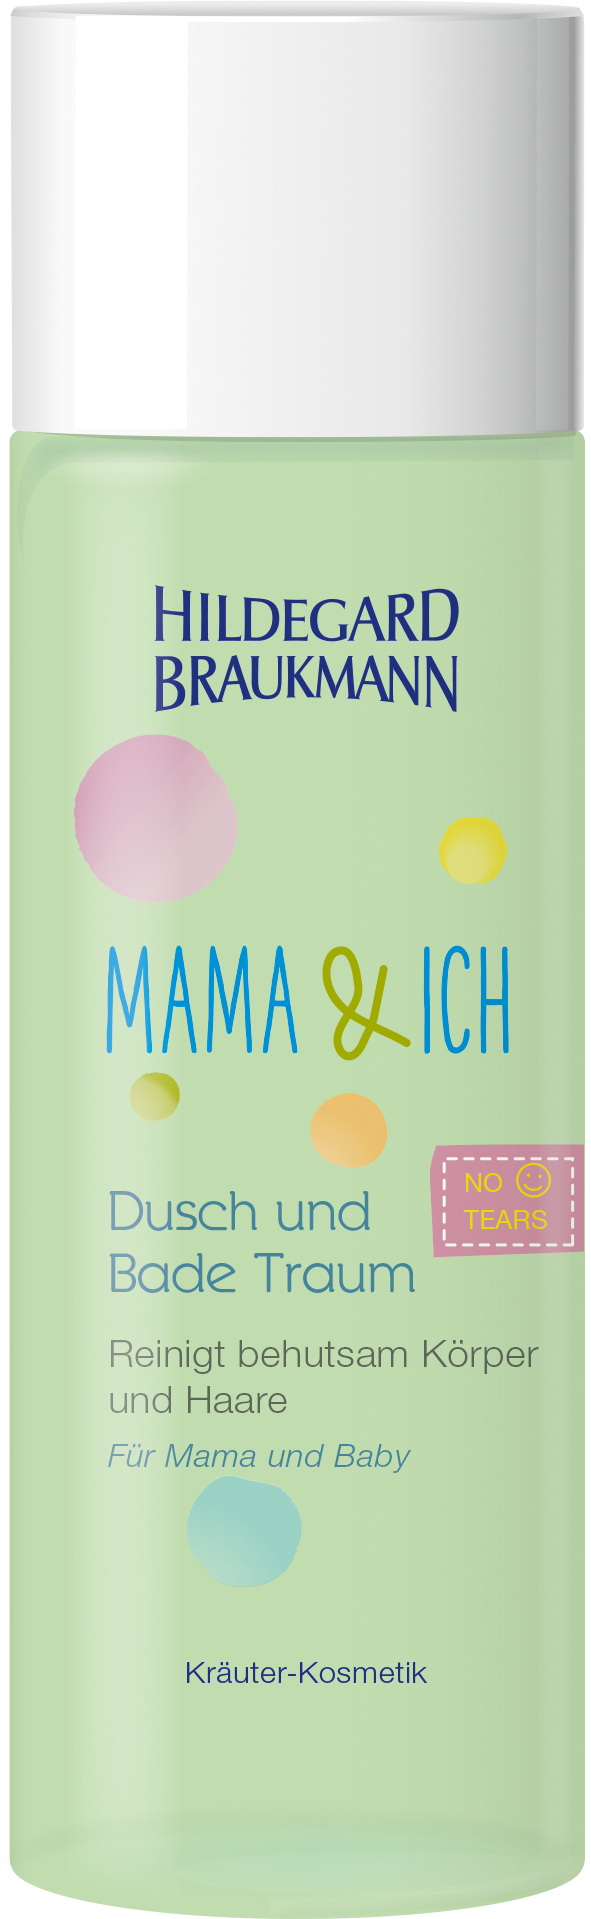 MAMA & ICH Dusch und Bade Traum | Hildegard Braukmann